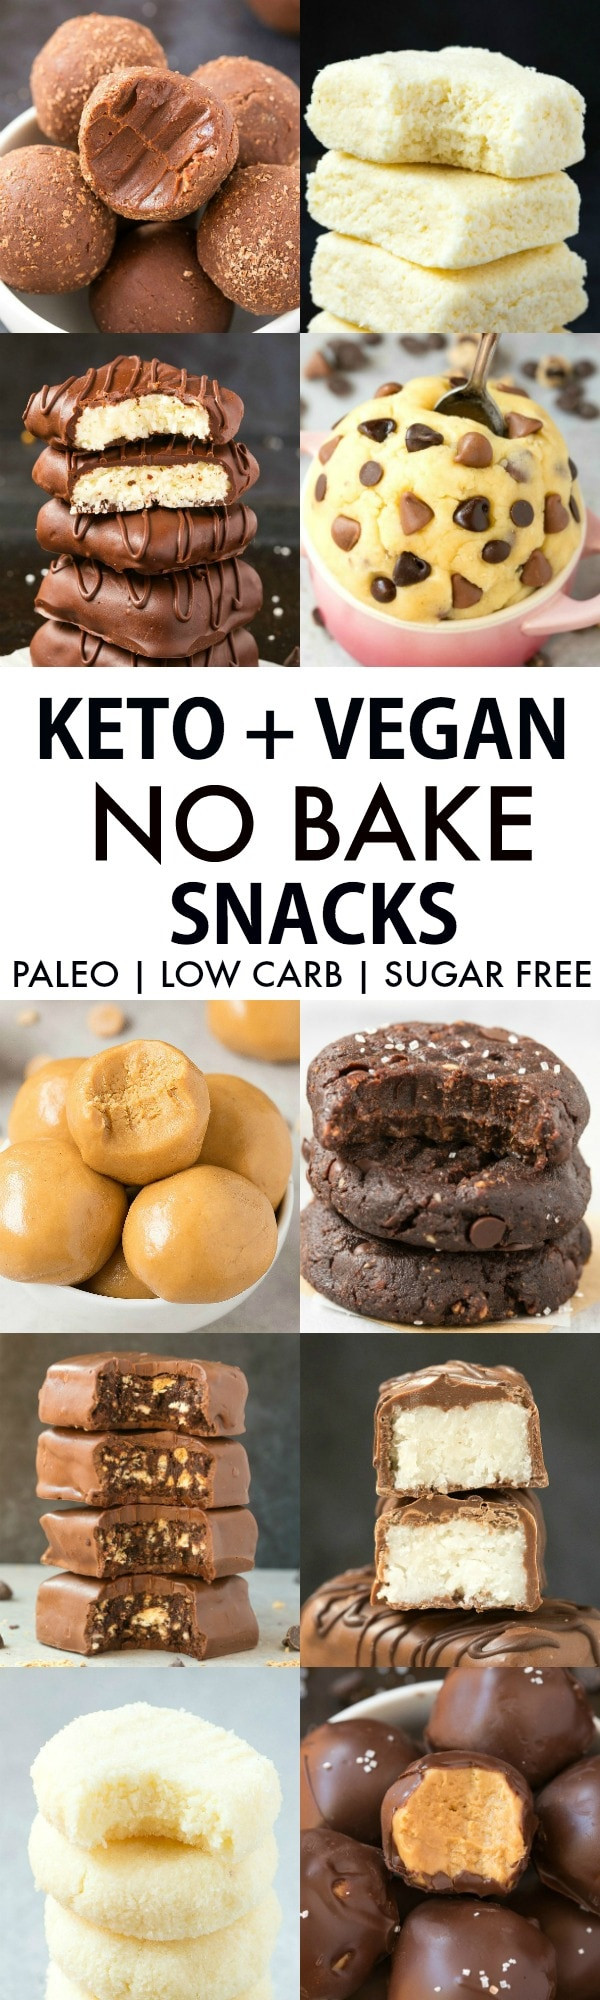 Vegan Keto Snacks Easy
 Easy Keto Vegan No Bake Snacks Paleo Low Carb